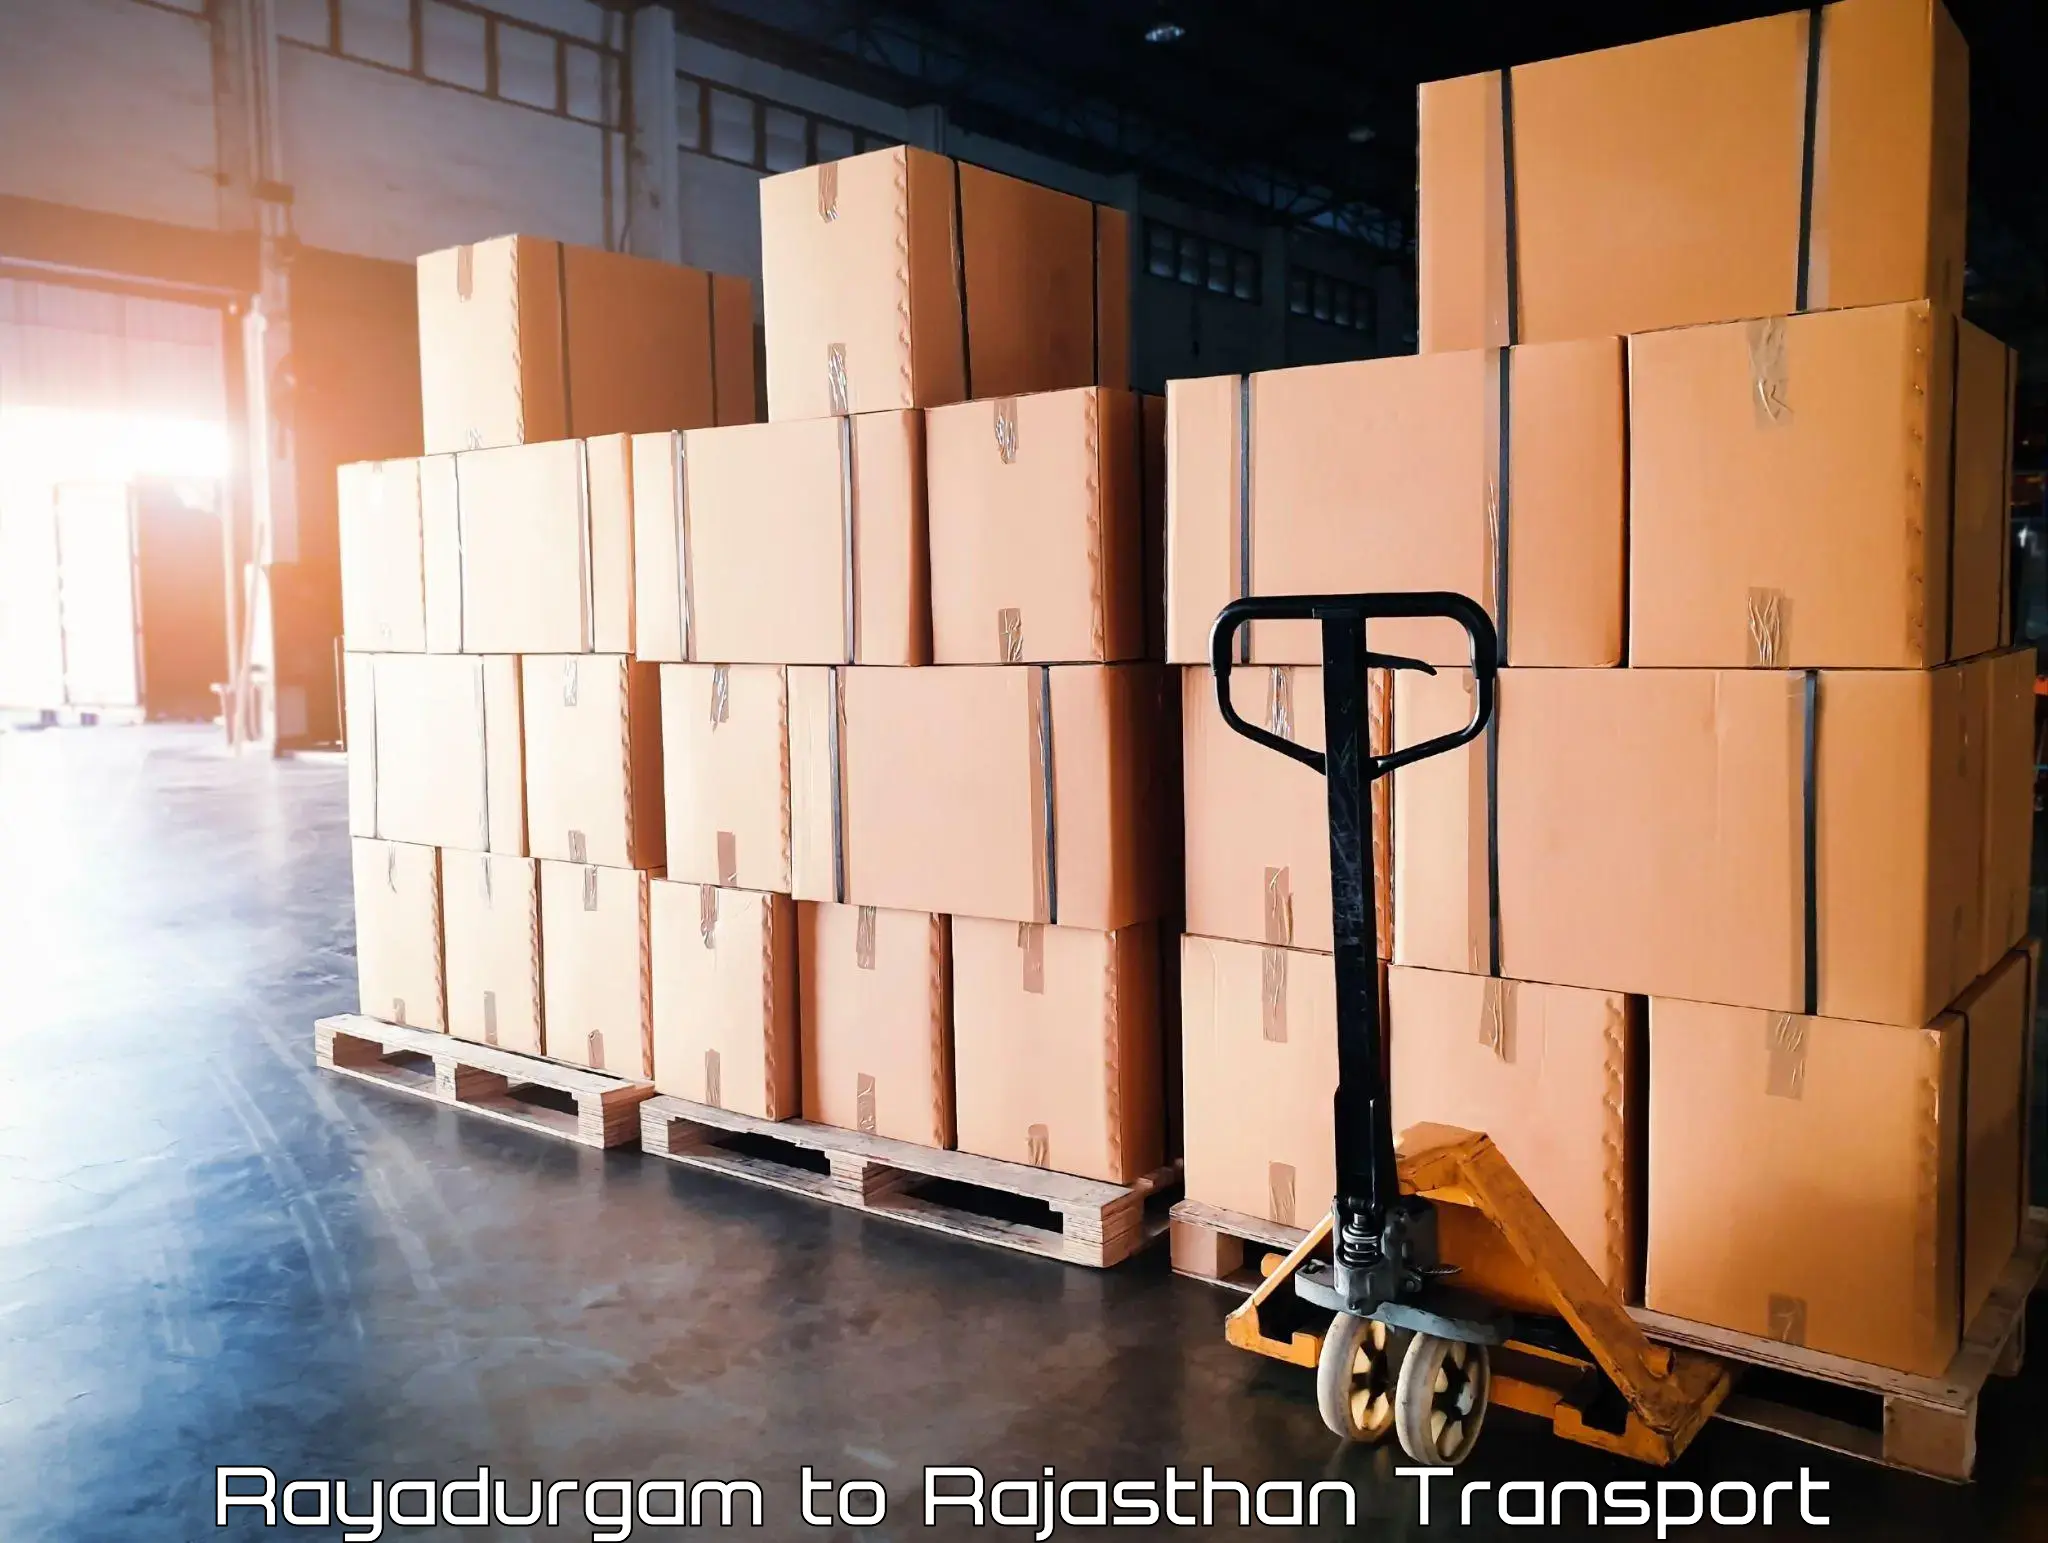 Daily transport service Rayadurgam to Raipur Pali